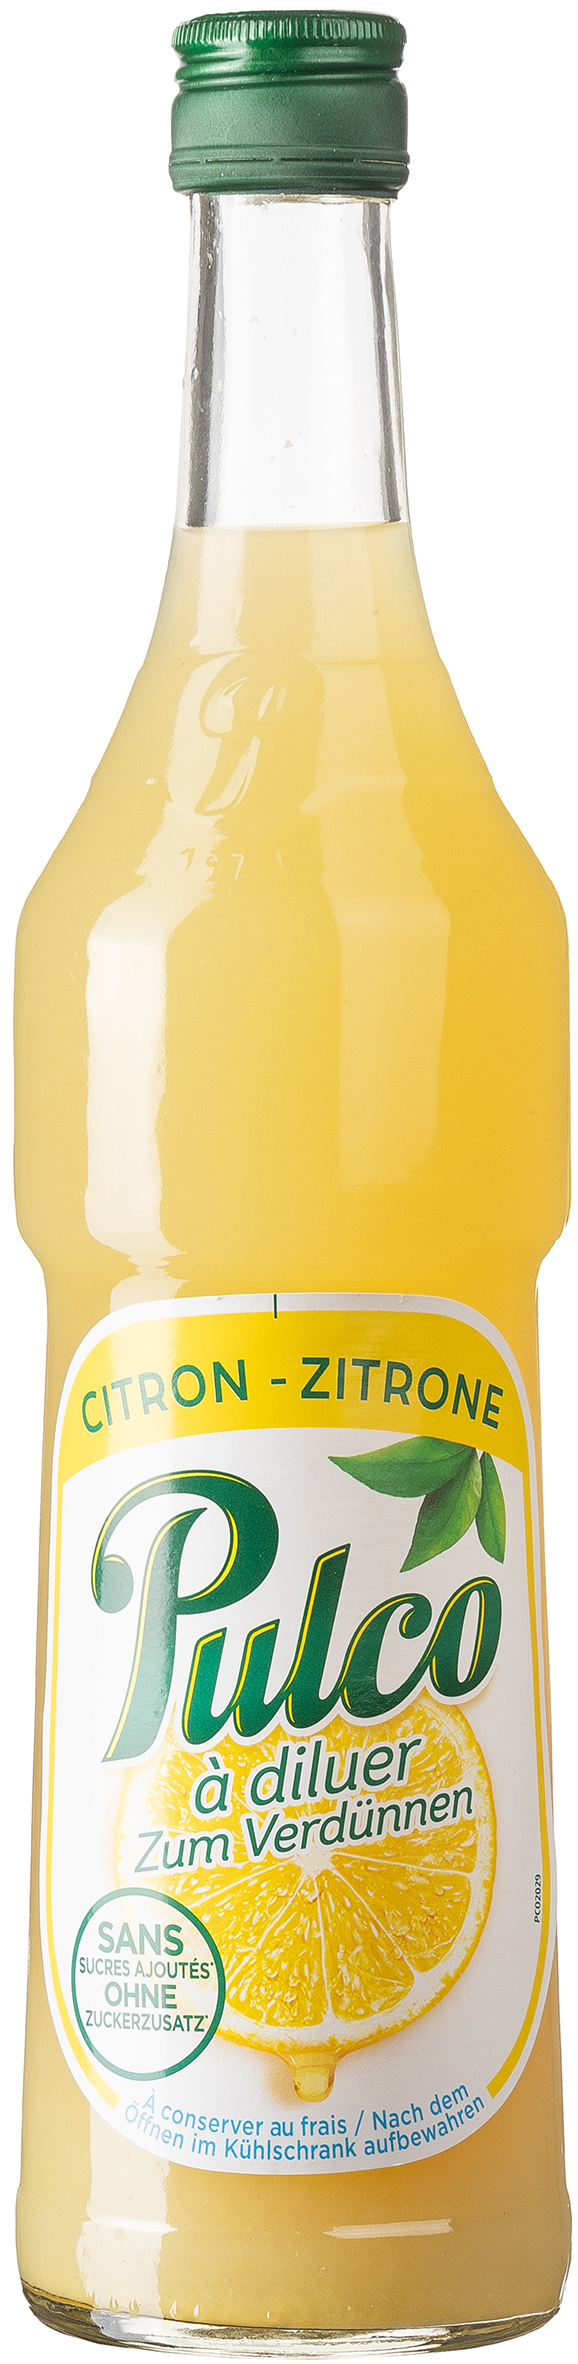 Pulco Zitrone 0,7L